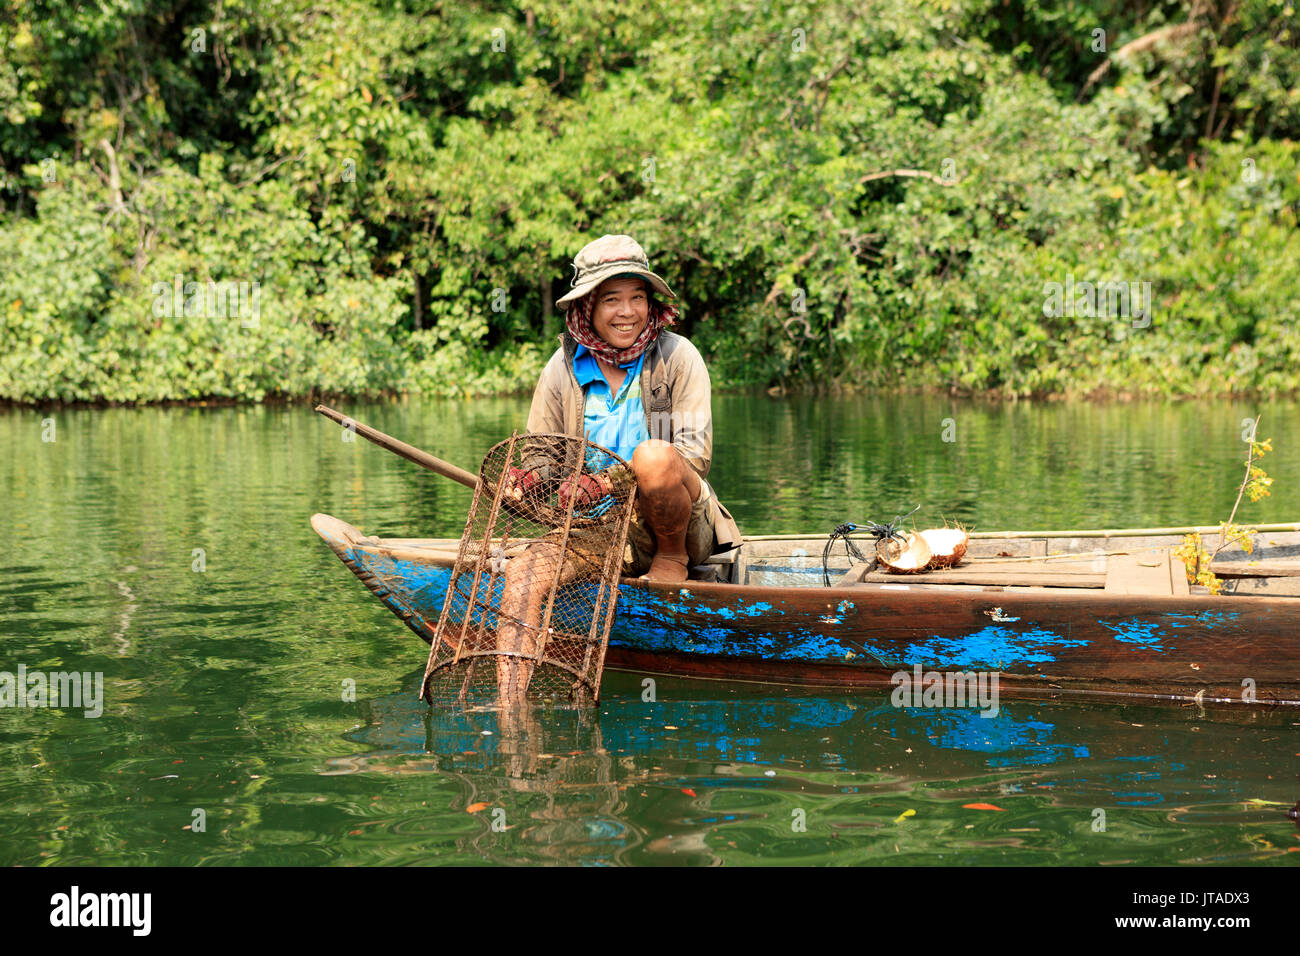 Pêcheur d'écrevisses sur un affluent de la rivière Phipot dans les monts cardamome, Koh Kong, le Cambodge, l'Indochine, l'Asie du Sud-Est, Asie Banque D'Images